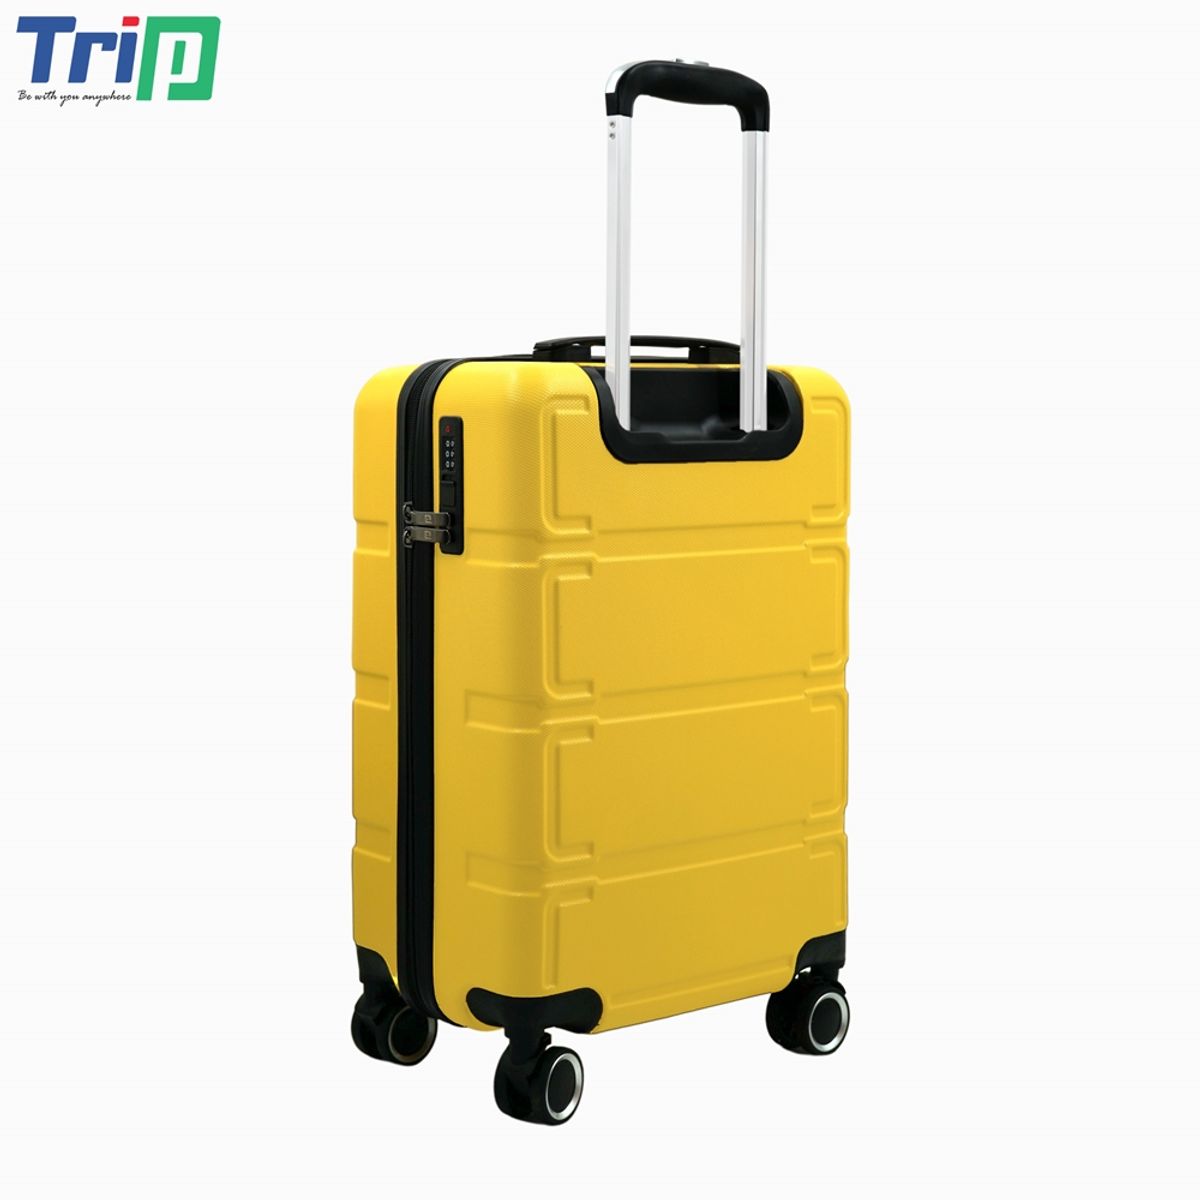 vali nhựa trip p806 size 24 inch, có khóa bảo mật, bảo hành 5 năm - freeship 8